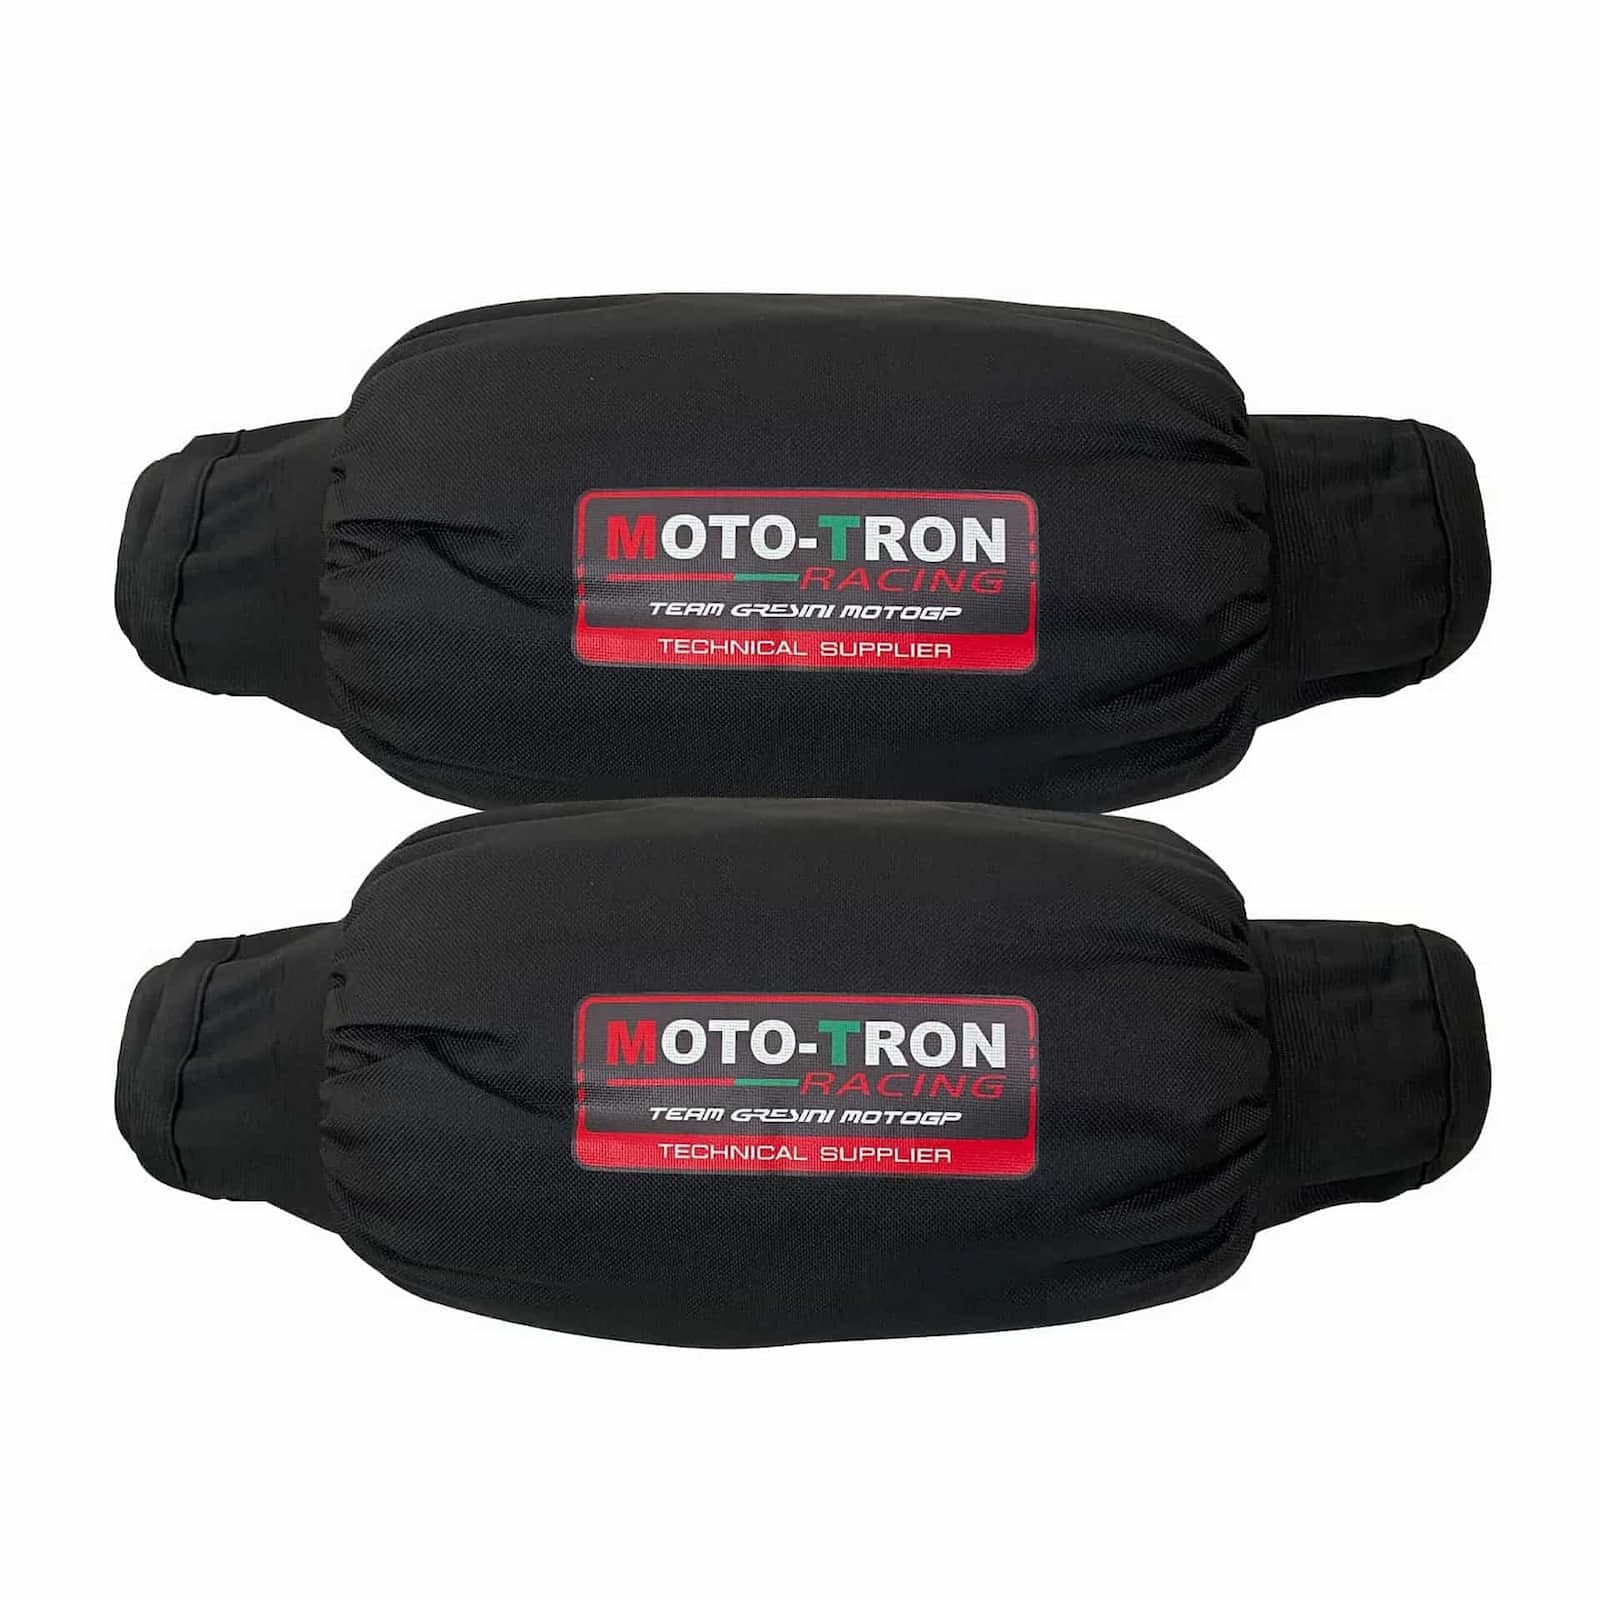 MOTO-TRON (モトトロン) タイヤウォーマー 17インチ TWN 120/70/17 200/55/17 BLACK ブラック